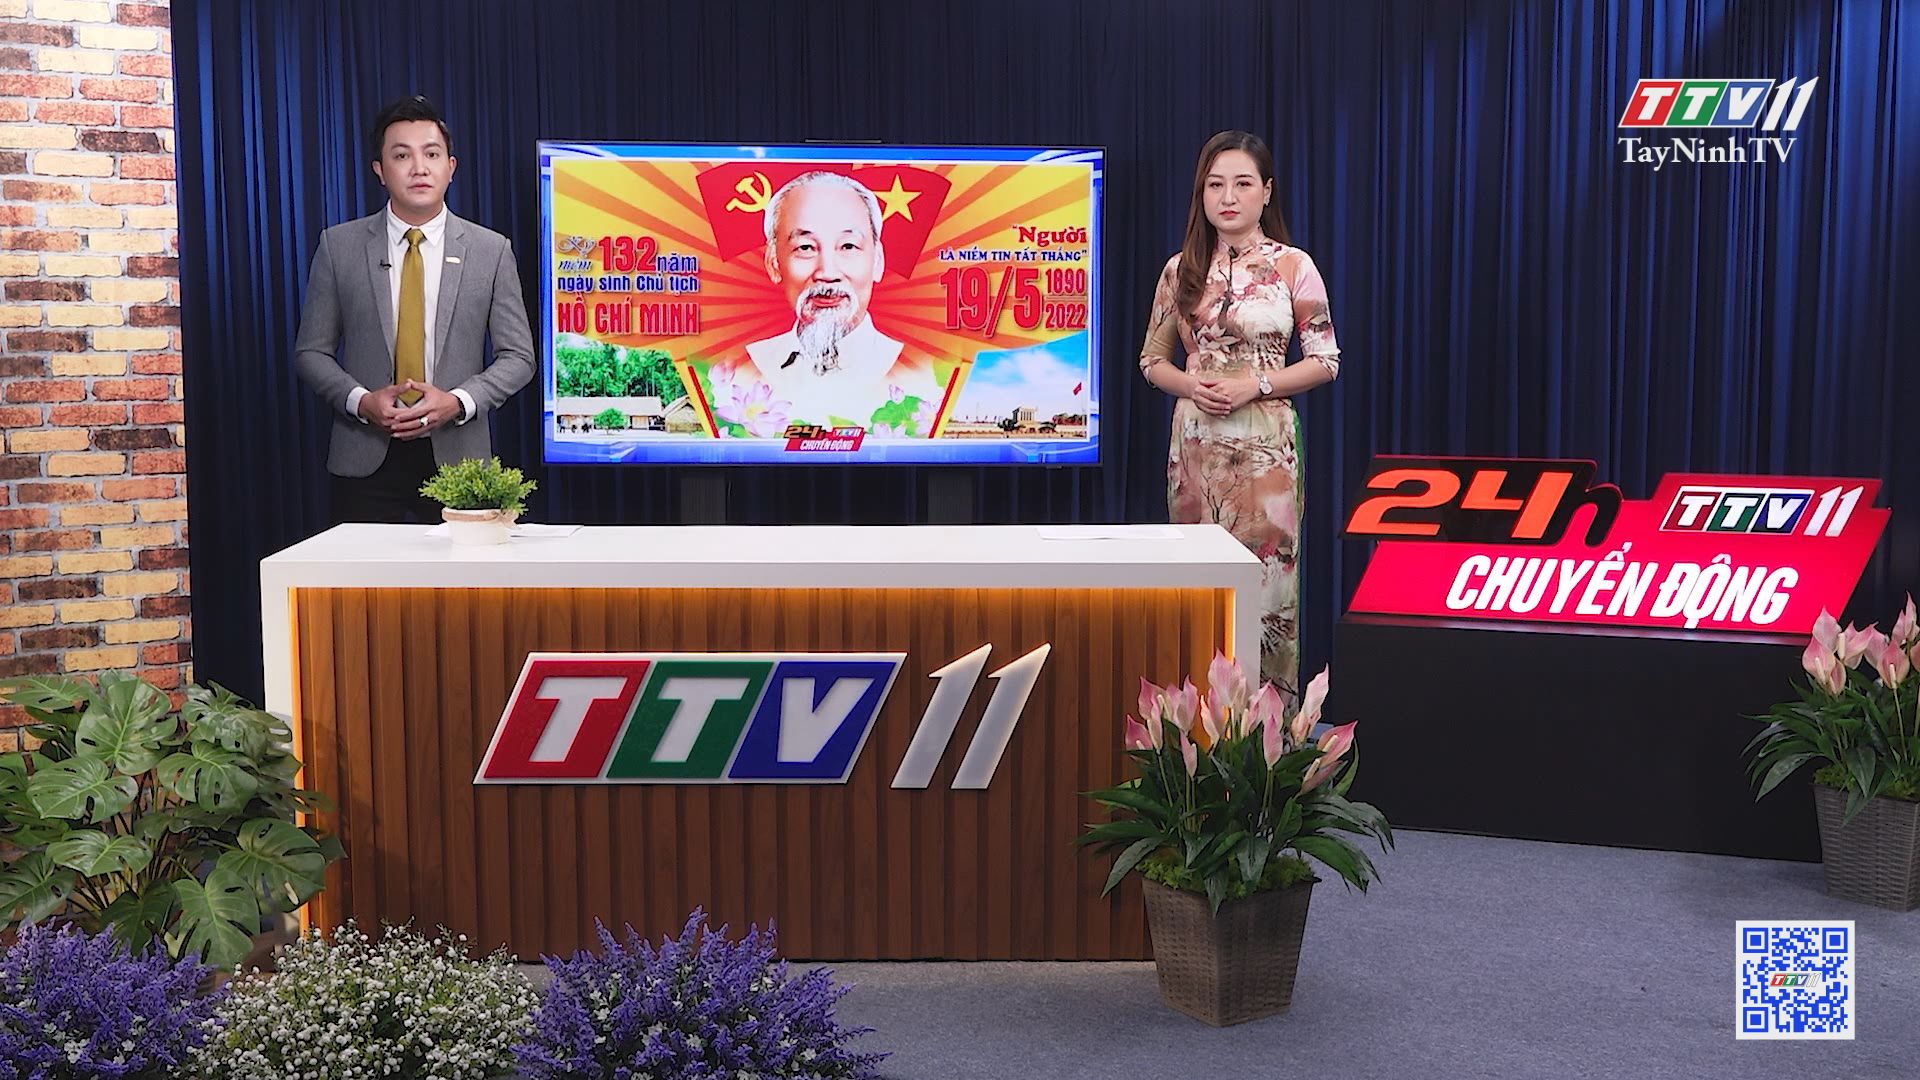 24h Chuyển động 19-5-2022 | Tin tức hôm nay | TayNinhTV